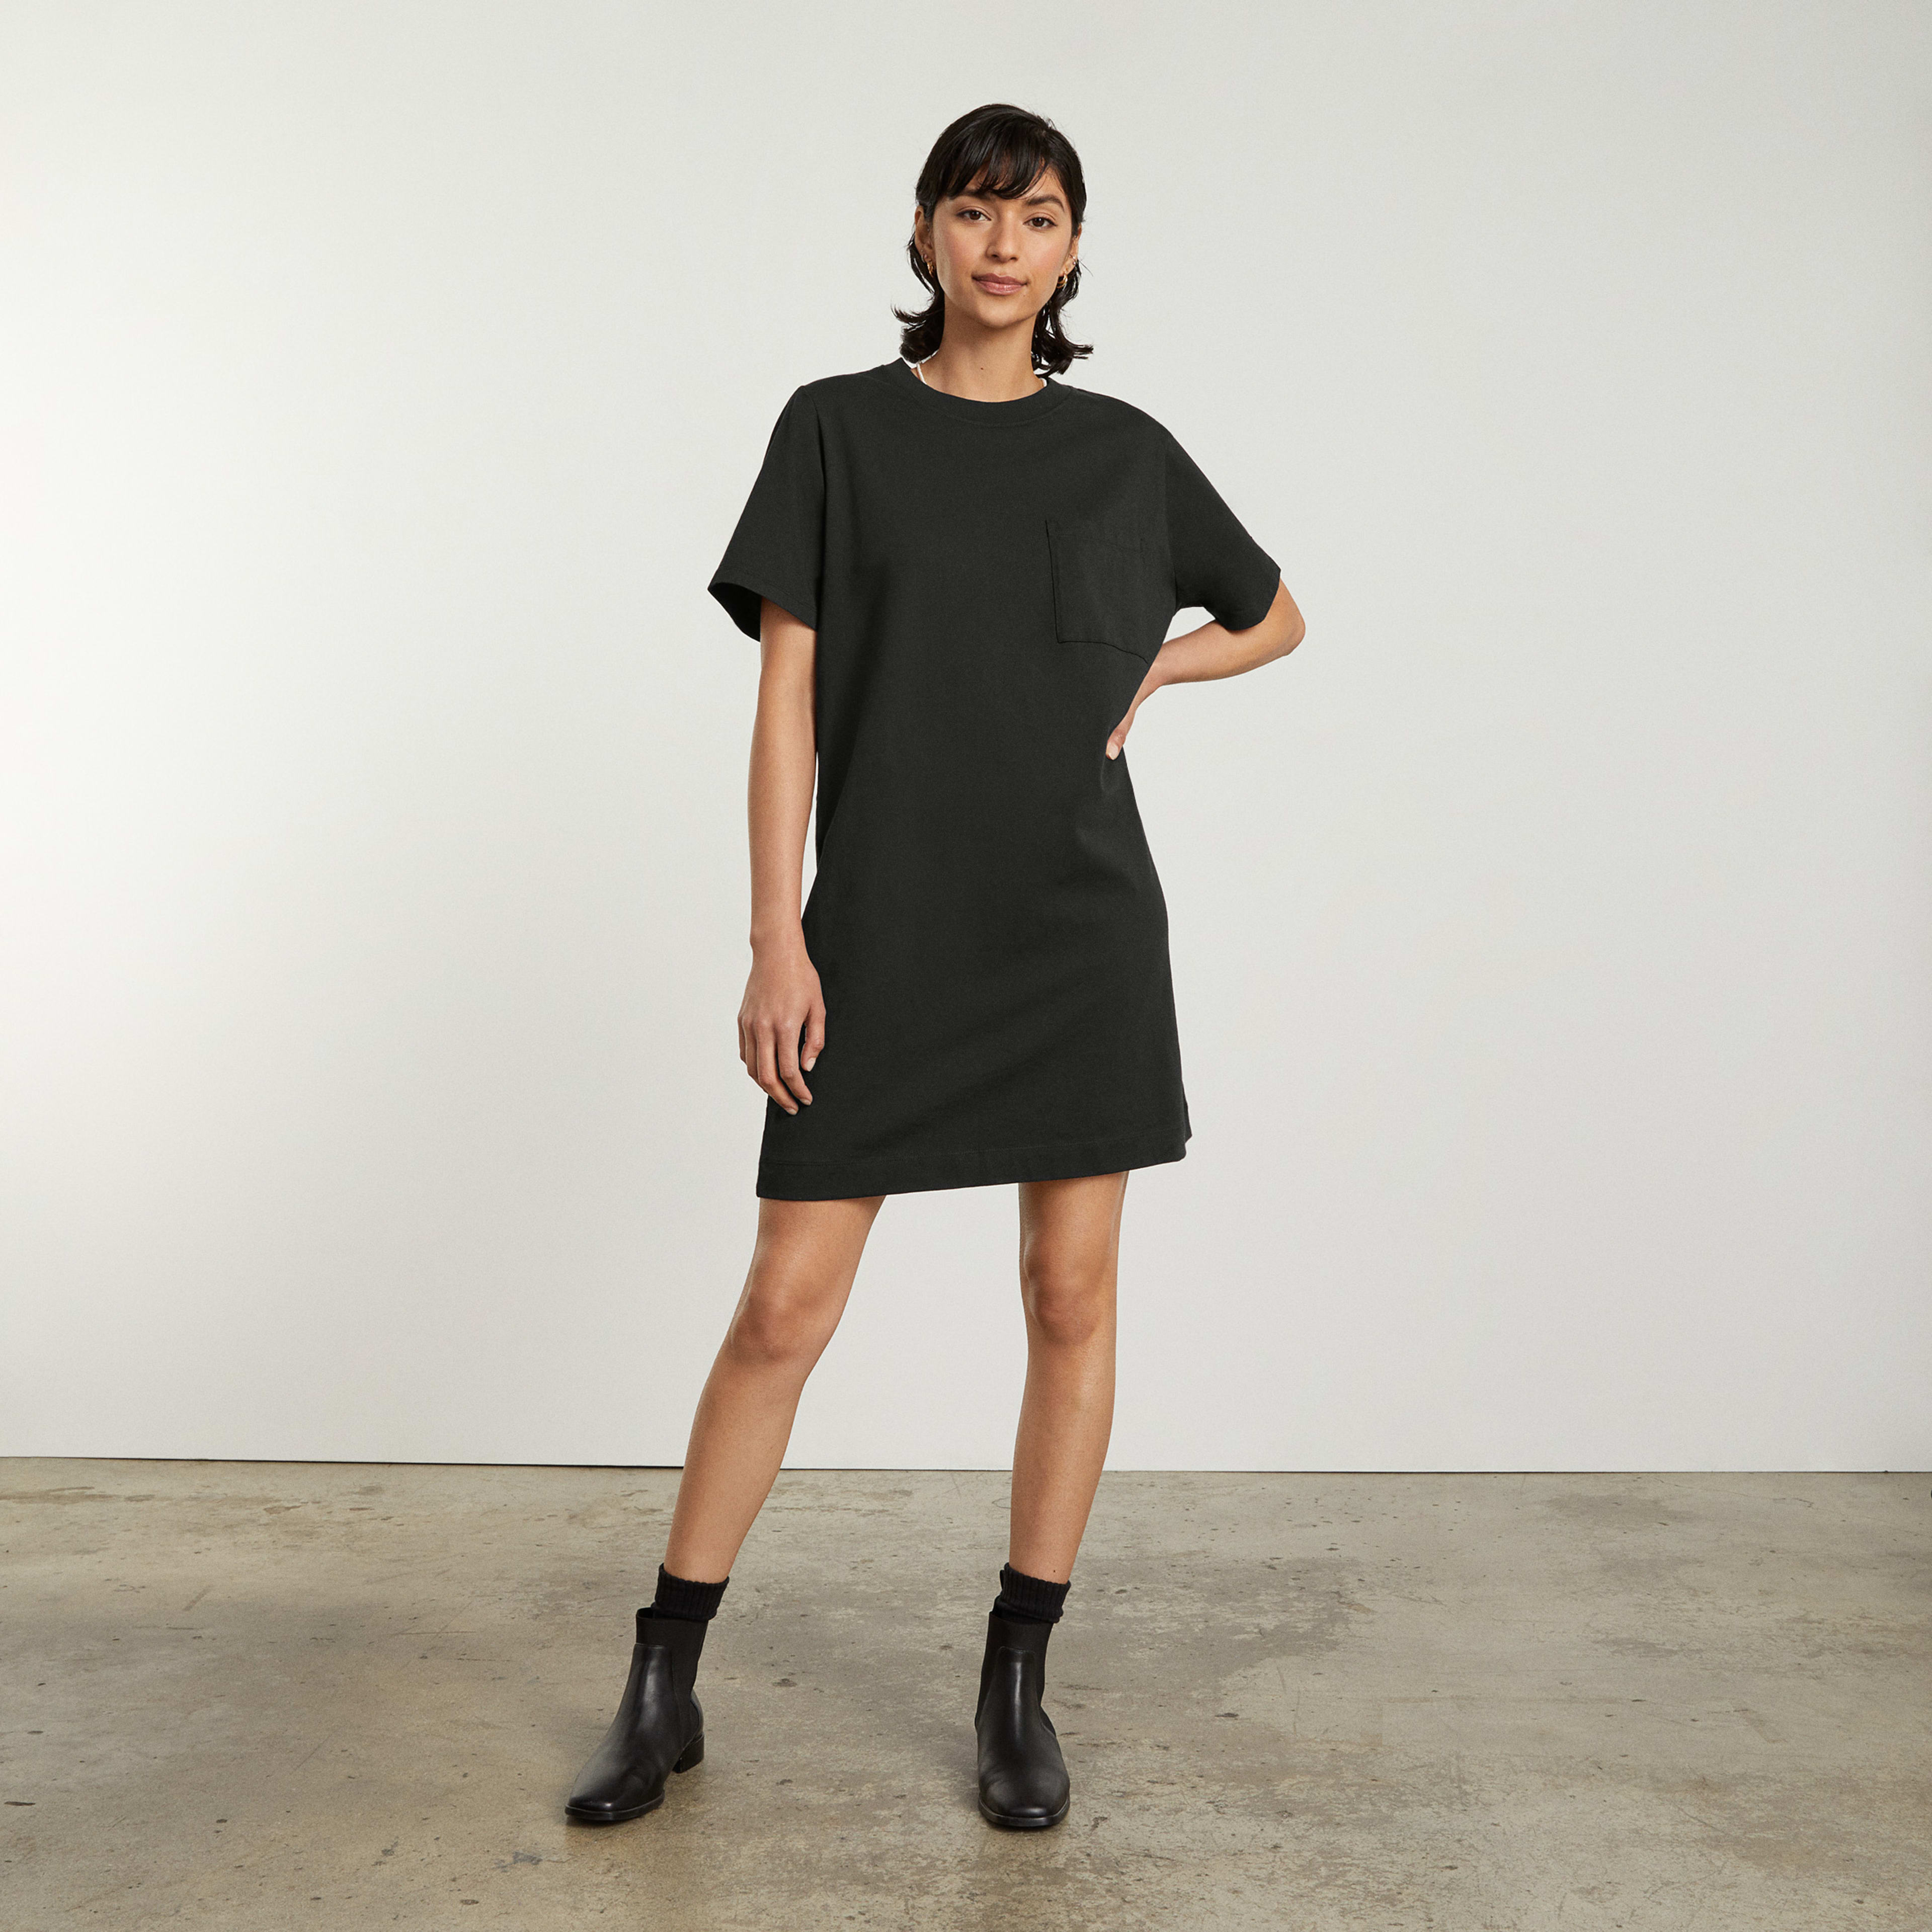 Women's Organic Cotton Weekend Tee Dress by Everlane in Black, Size XXS